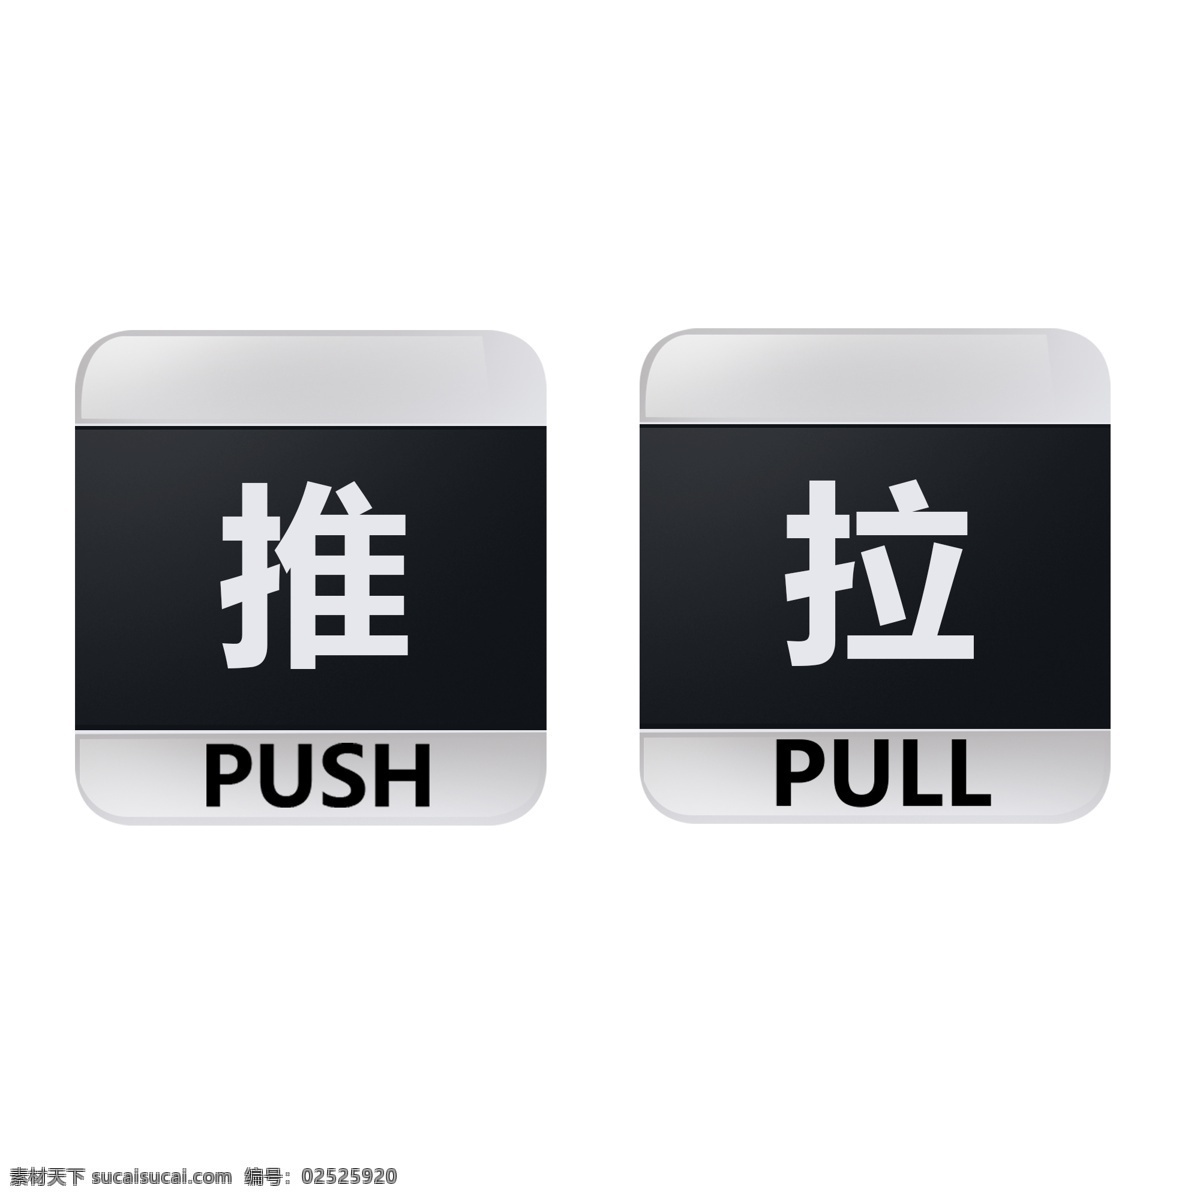 推拉 标志 透明 底 推门 拉门 推 拉 黑色 灰色 push pull 常用标示 公共标志 标志图标 标志牌